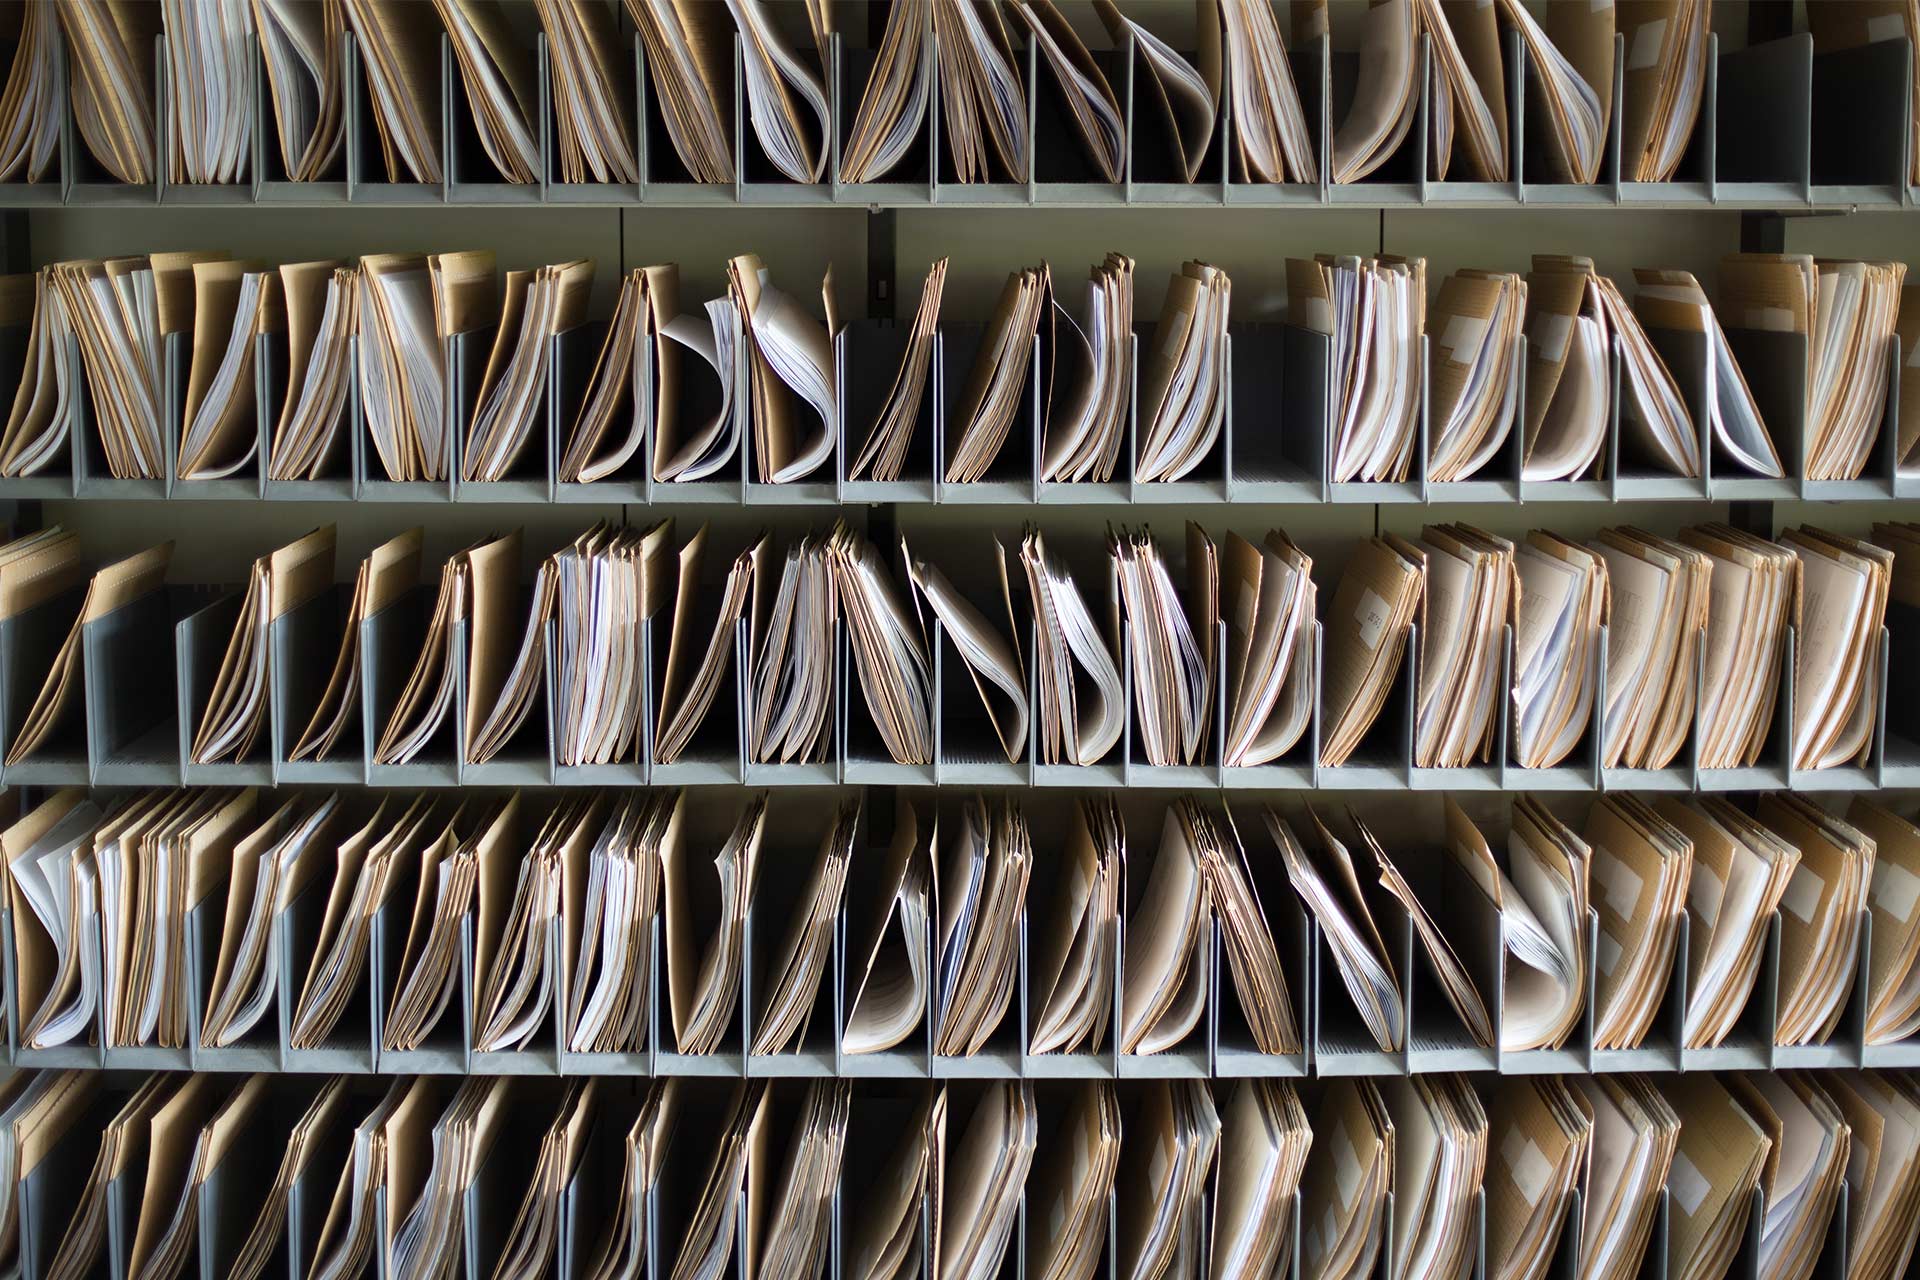 記録として保管された紙のファイル。アーカイブの一形態としてのパソコンのバックアップ プロセスを表している